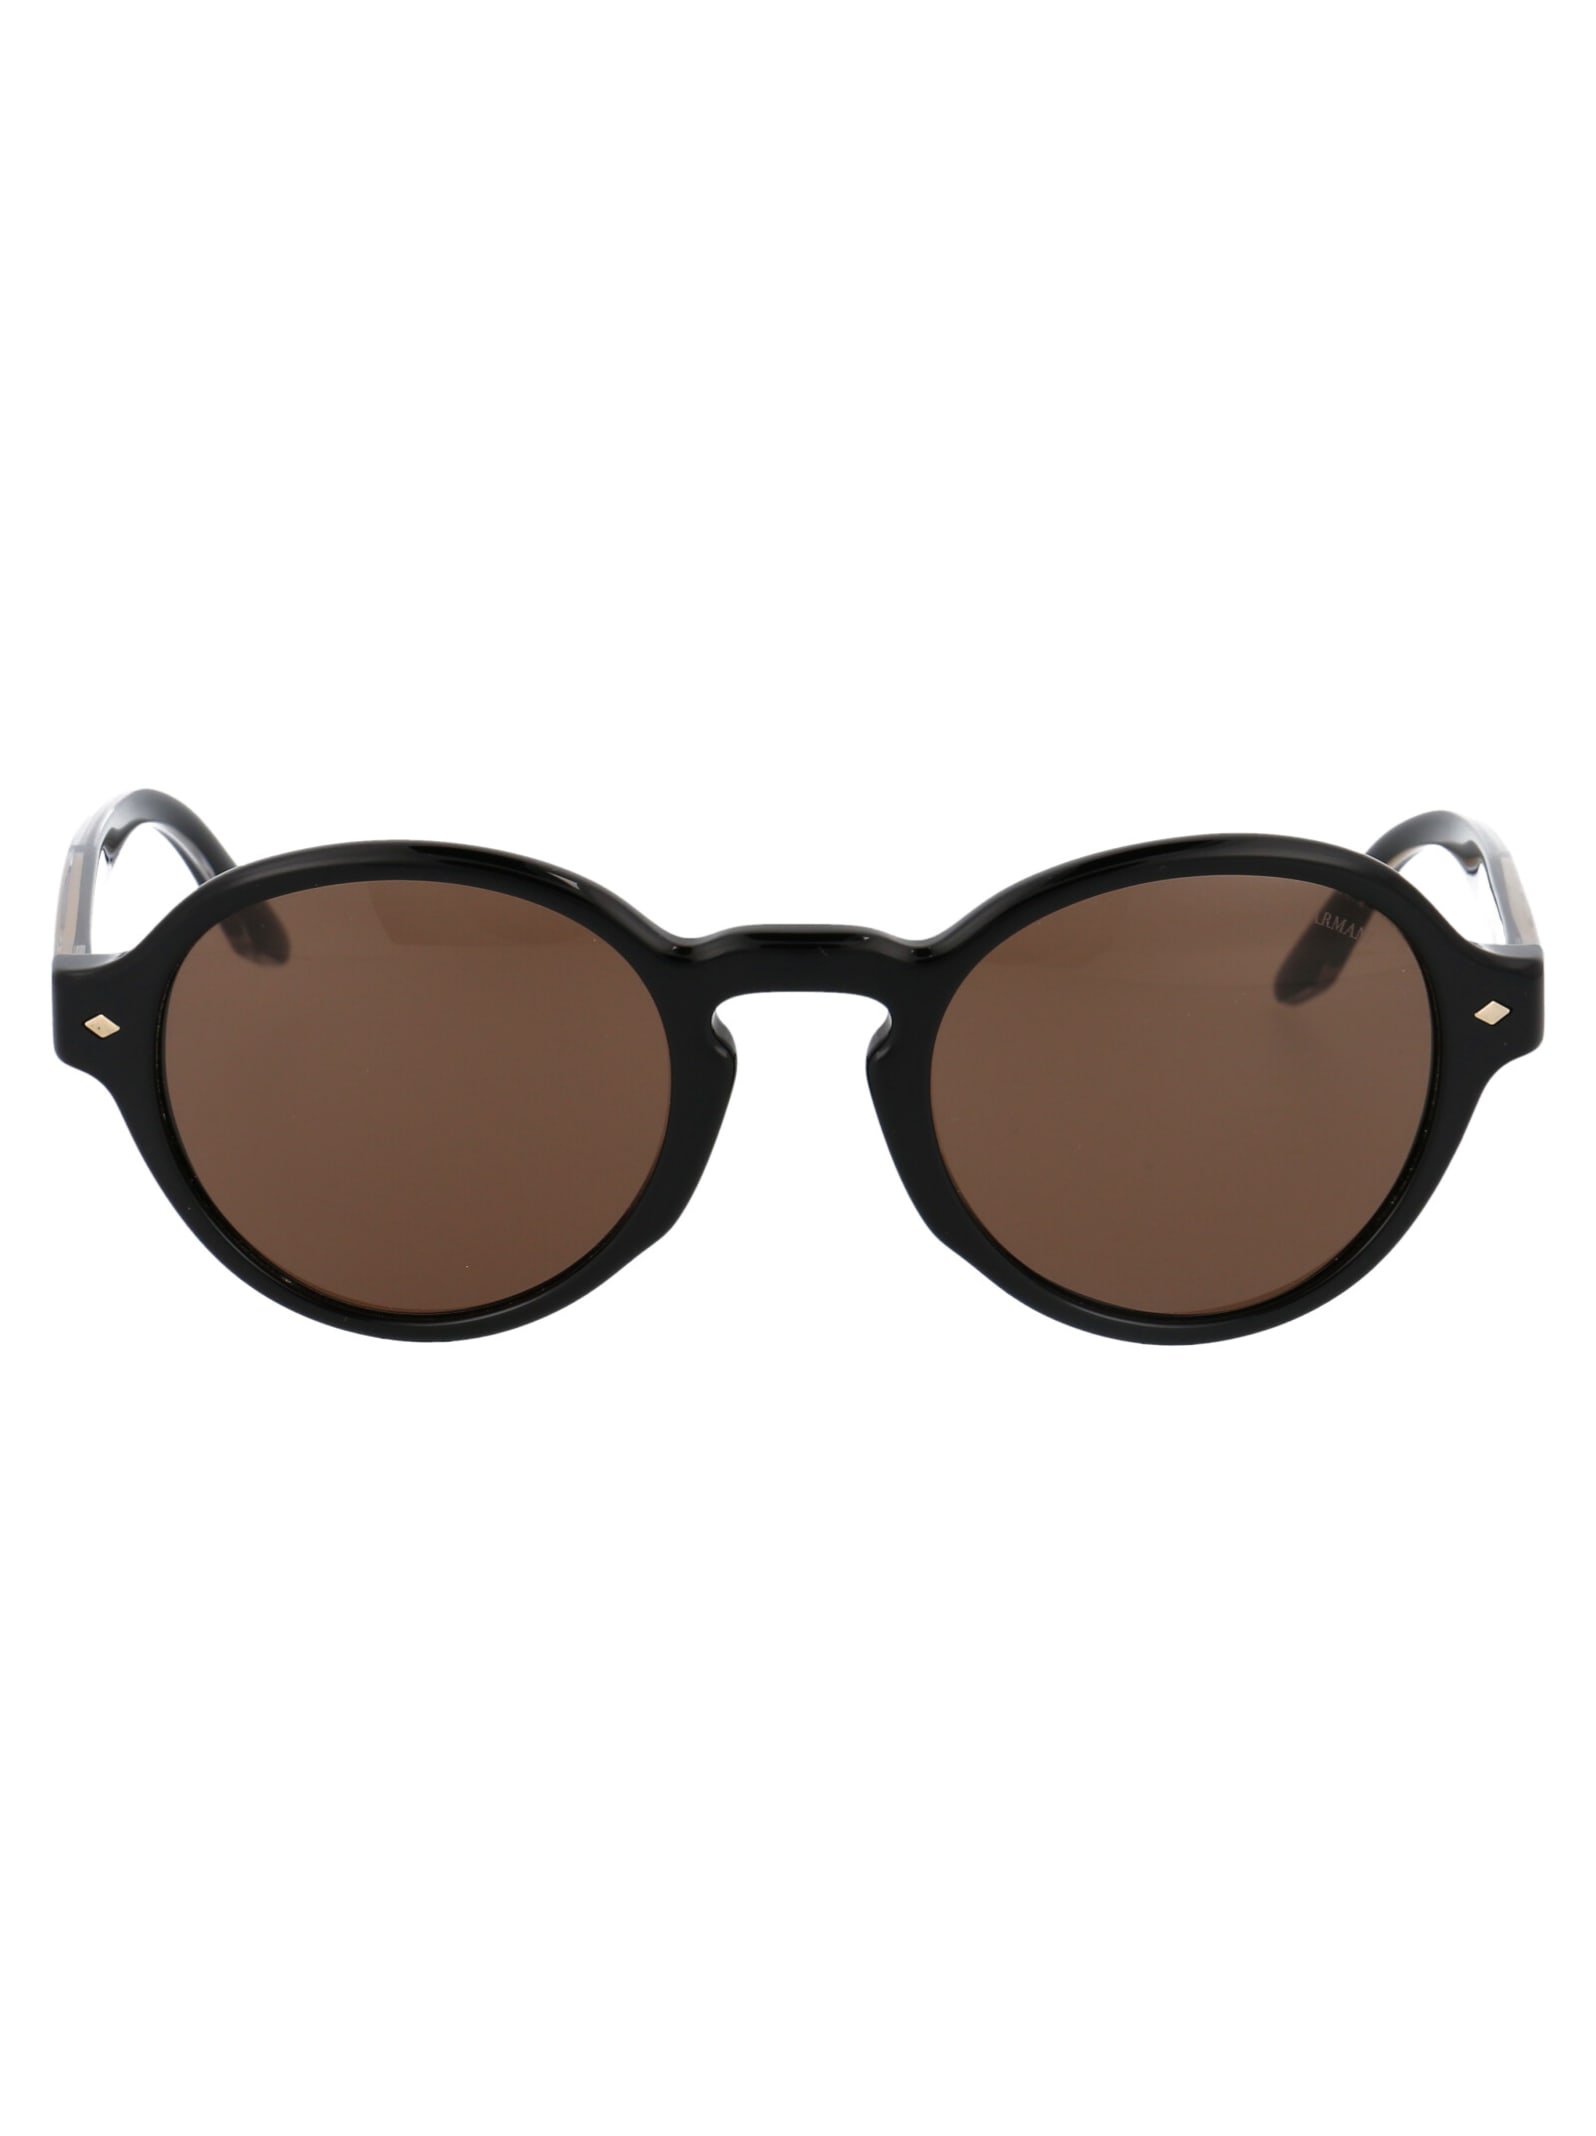 Giorgio Armani 0ar8130 Sunglasses